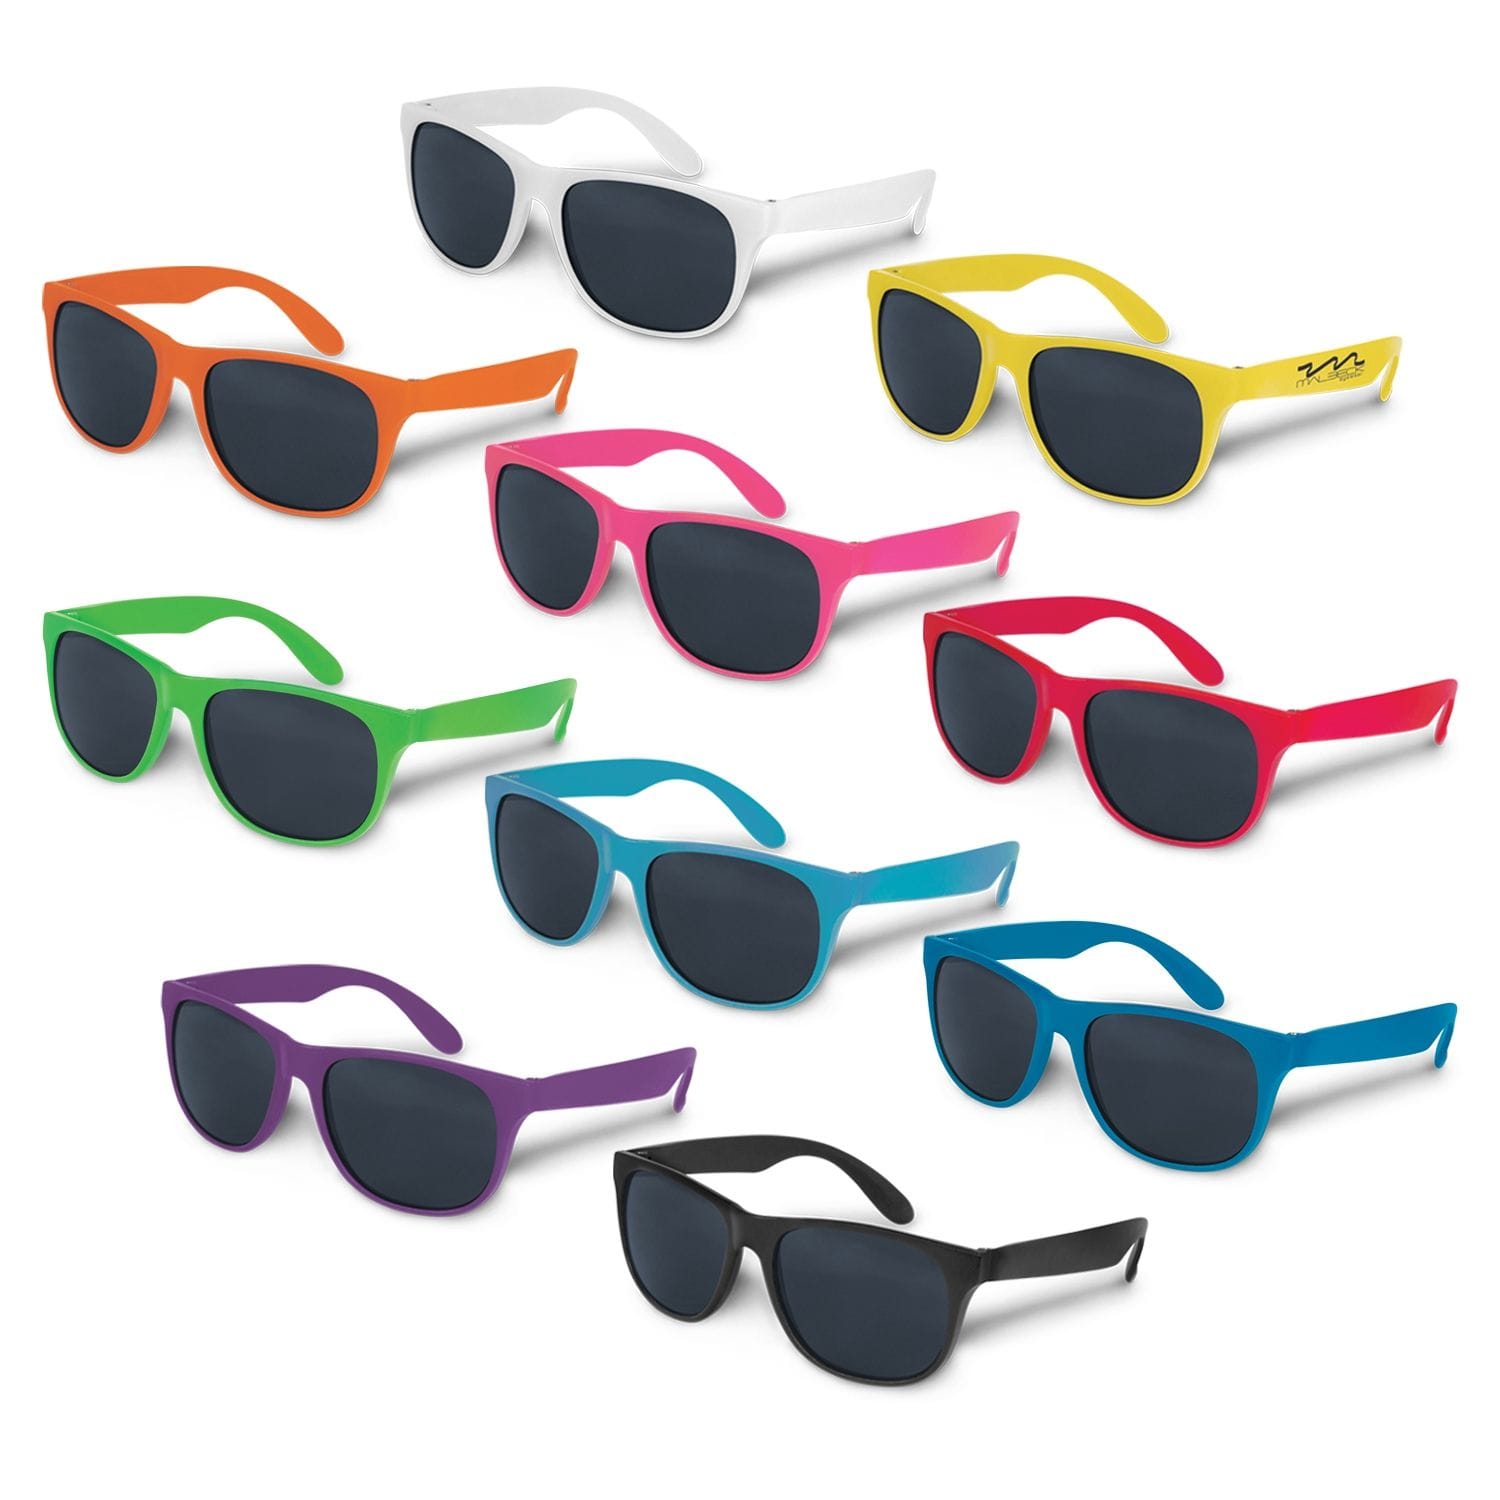 Malibu sunglasses range